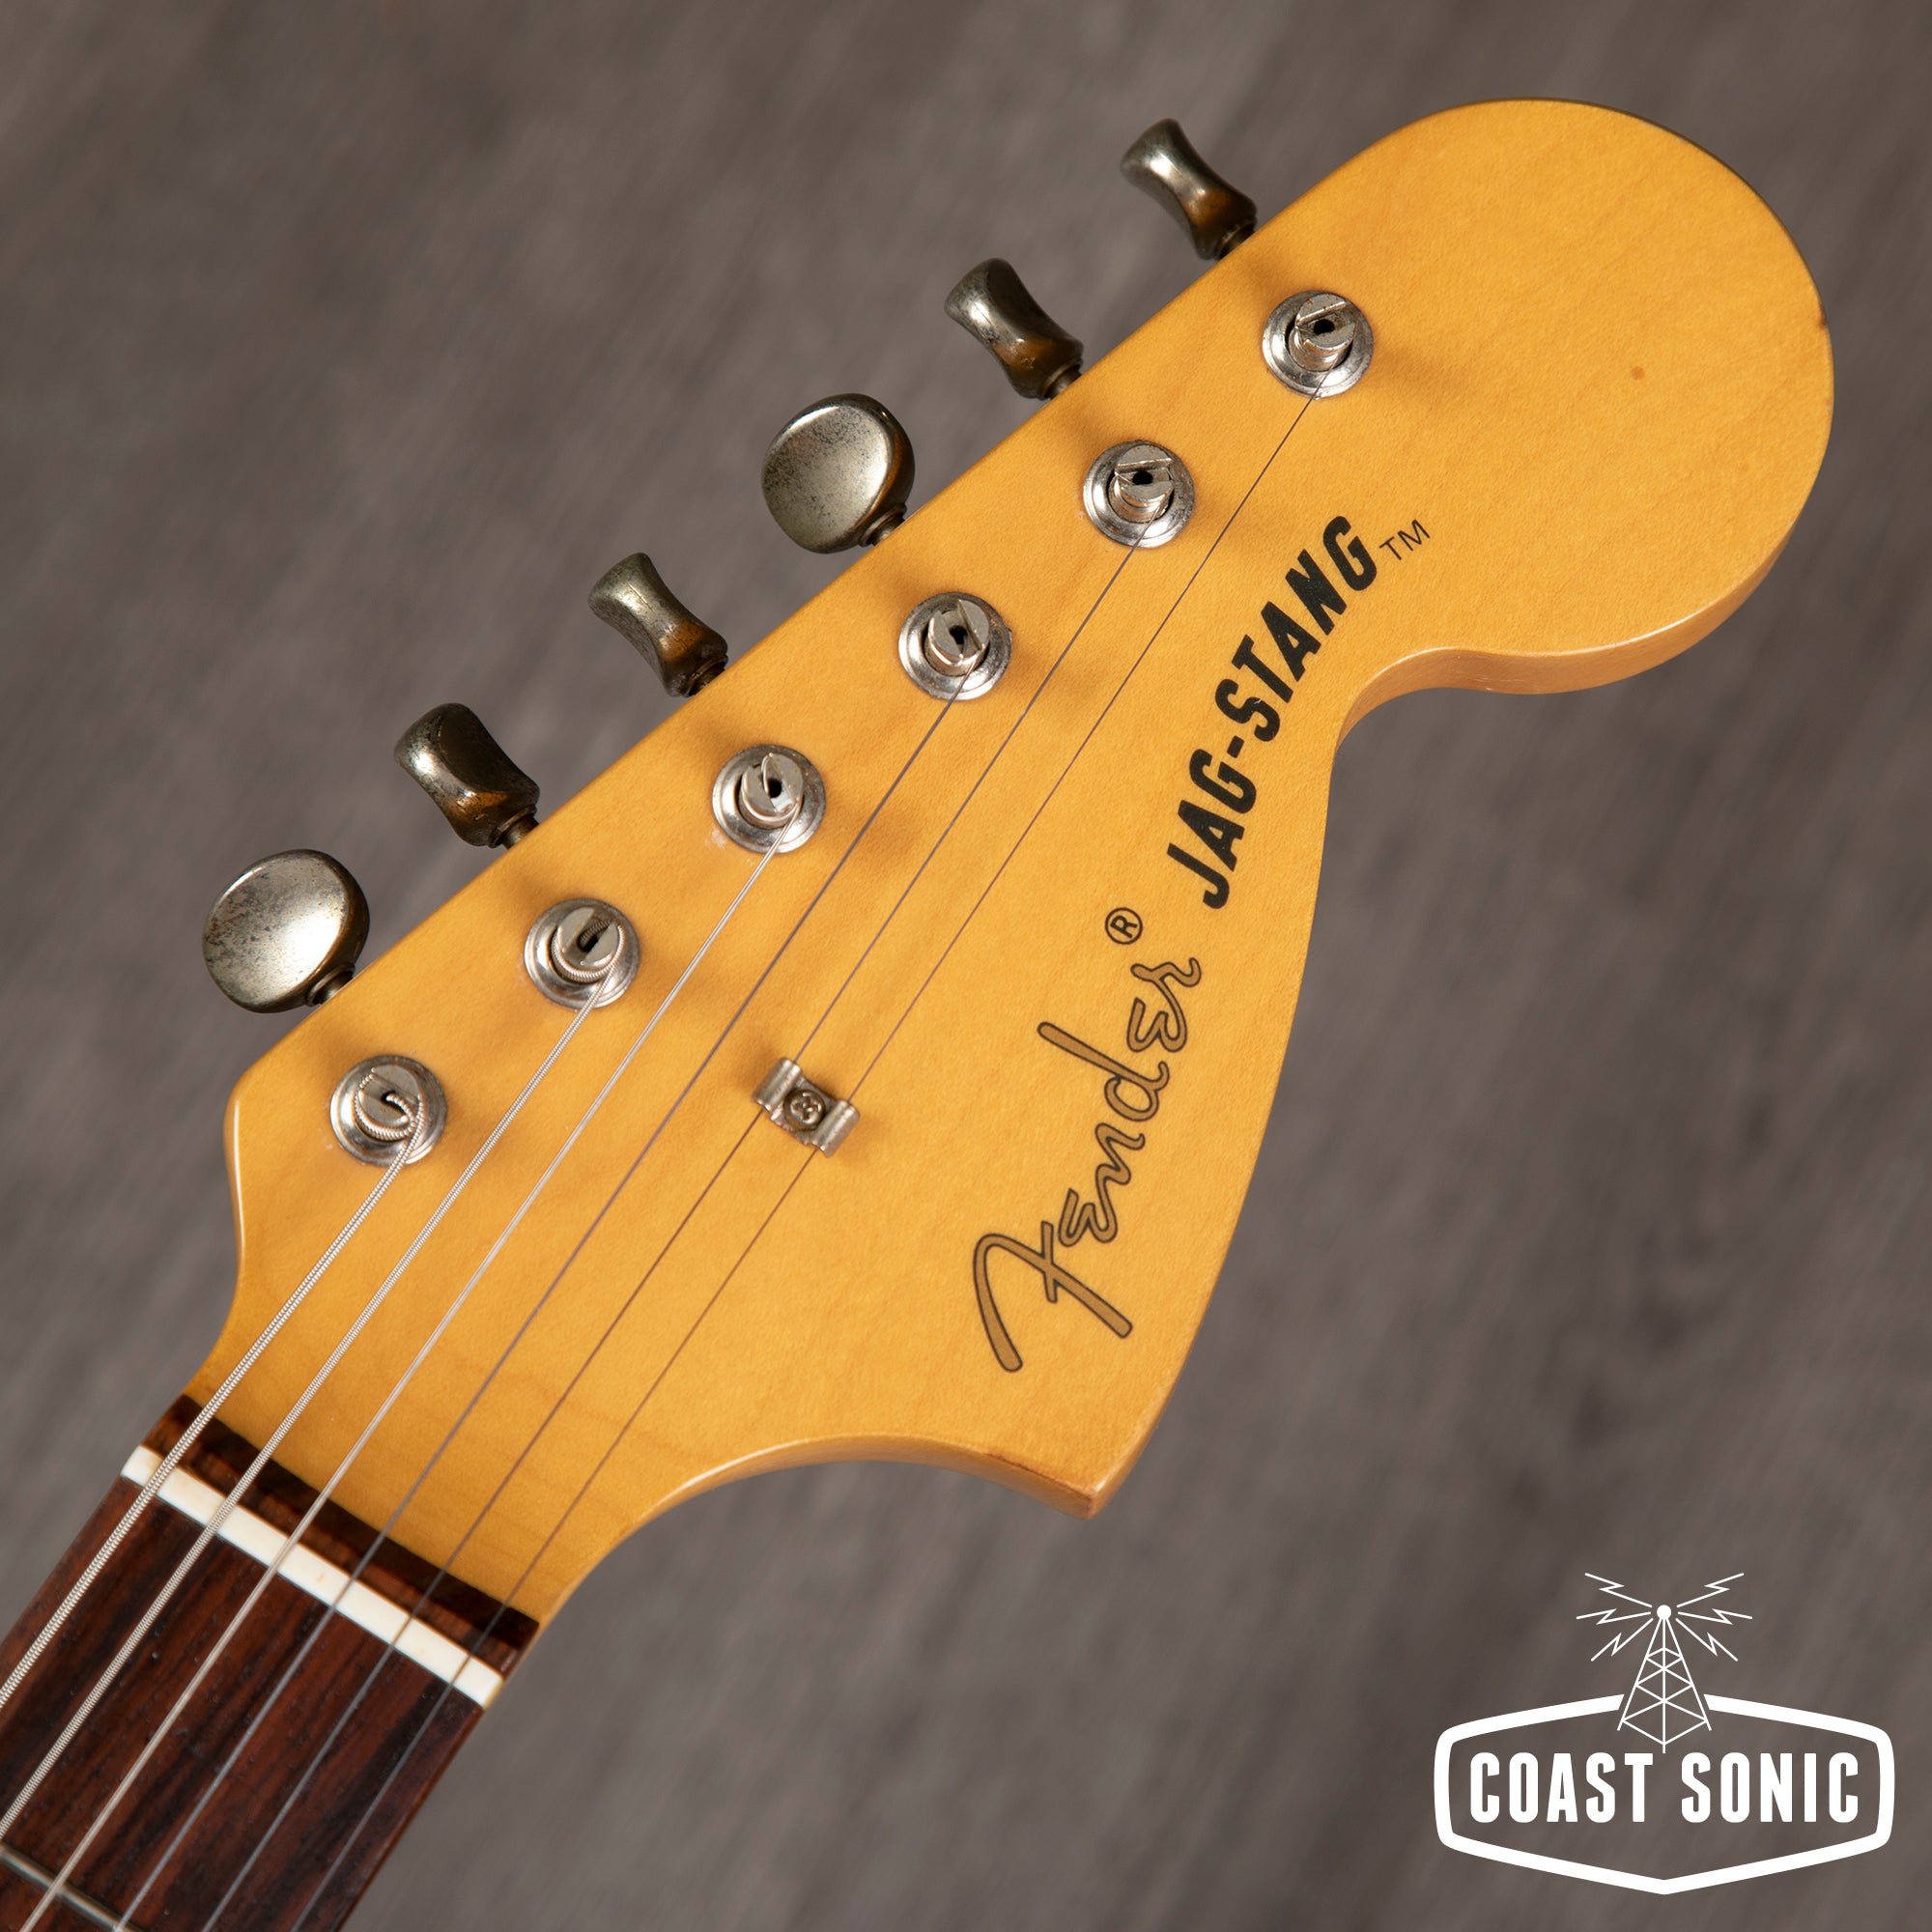 1997 Fender Jag-Stang Kurt Cobain Made in Japan